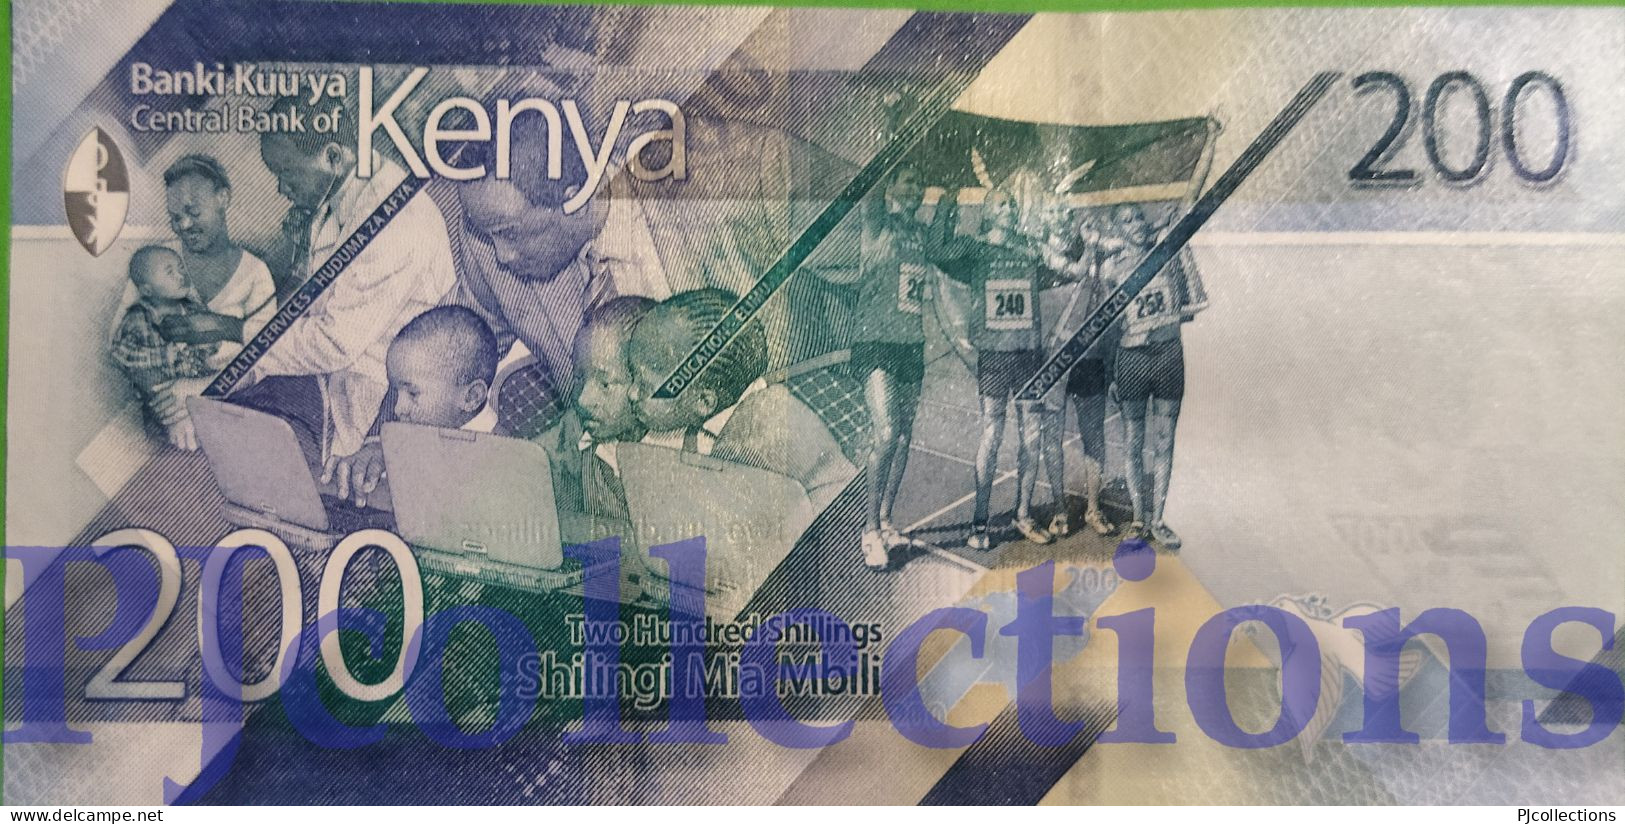 KENYA 200 SHILLINGS 2019 PICK 54 UNC PREFIX "AA" - Kenya